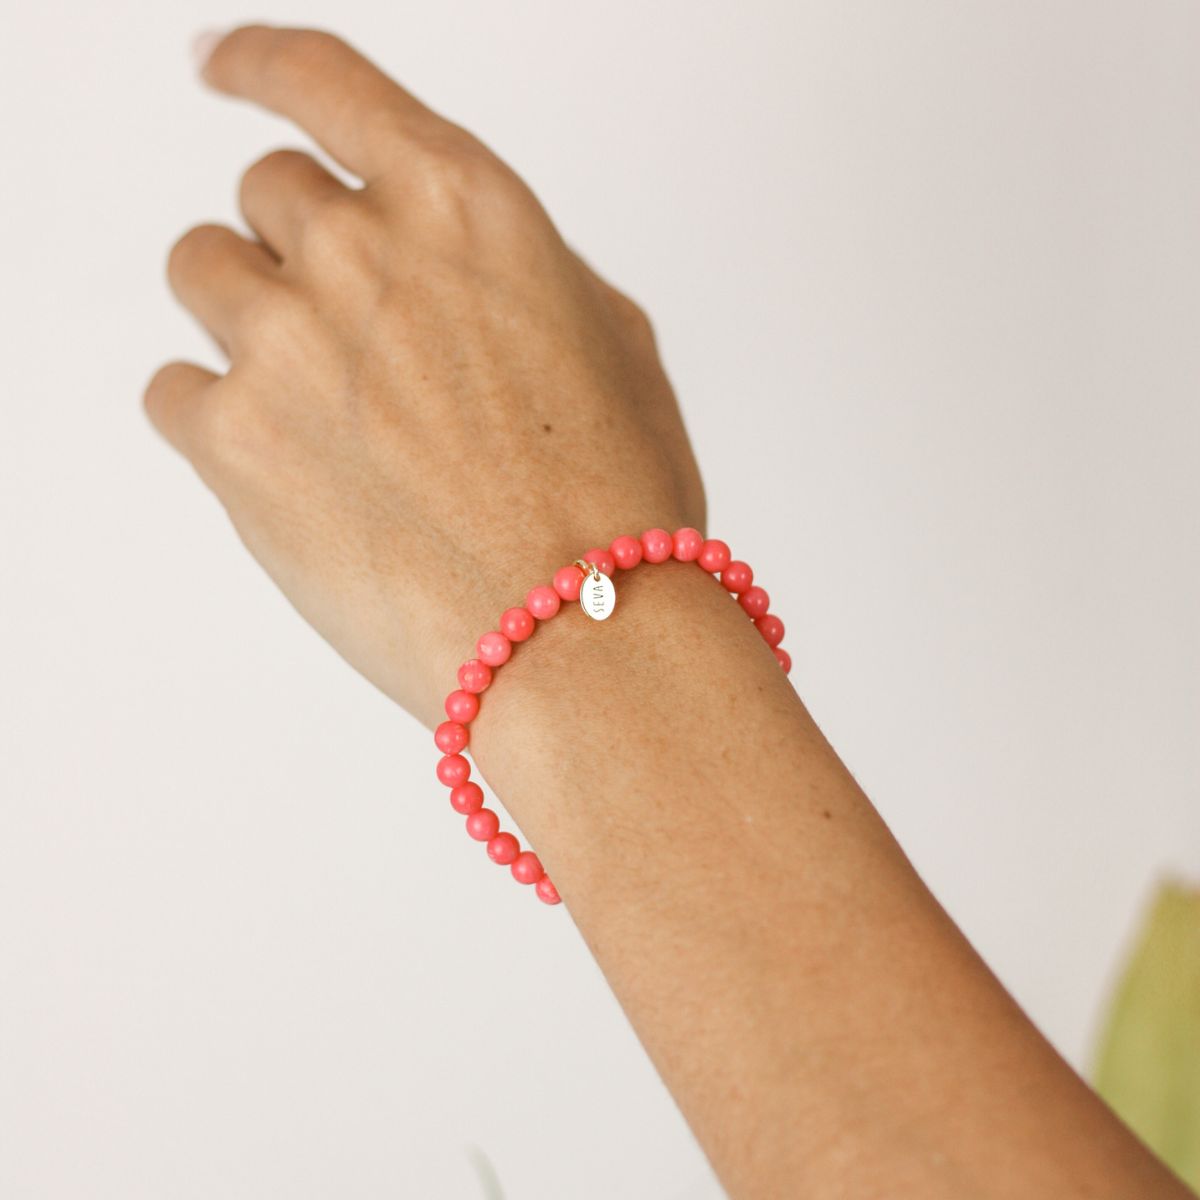 a woman wearing a stone bracelet on her wrist